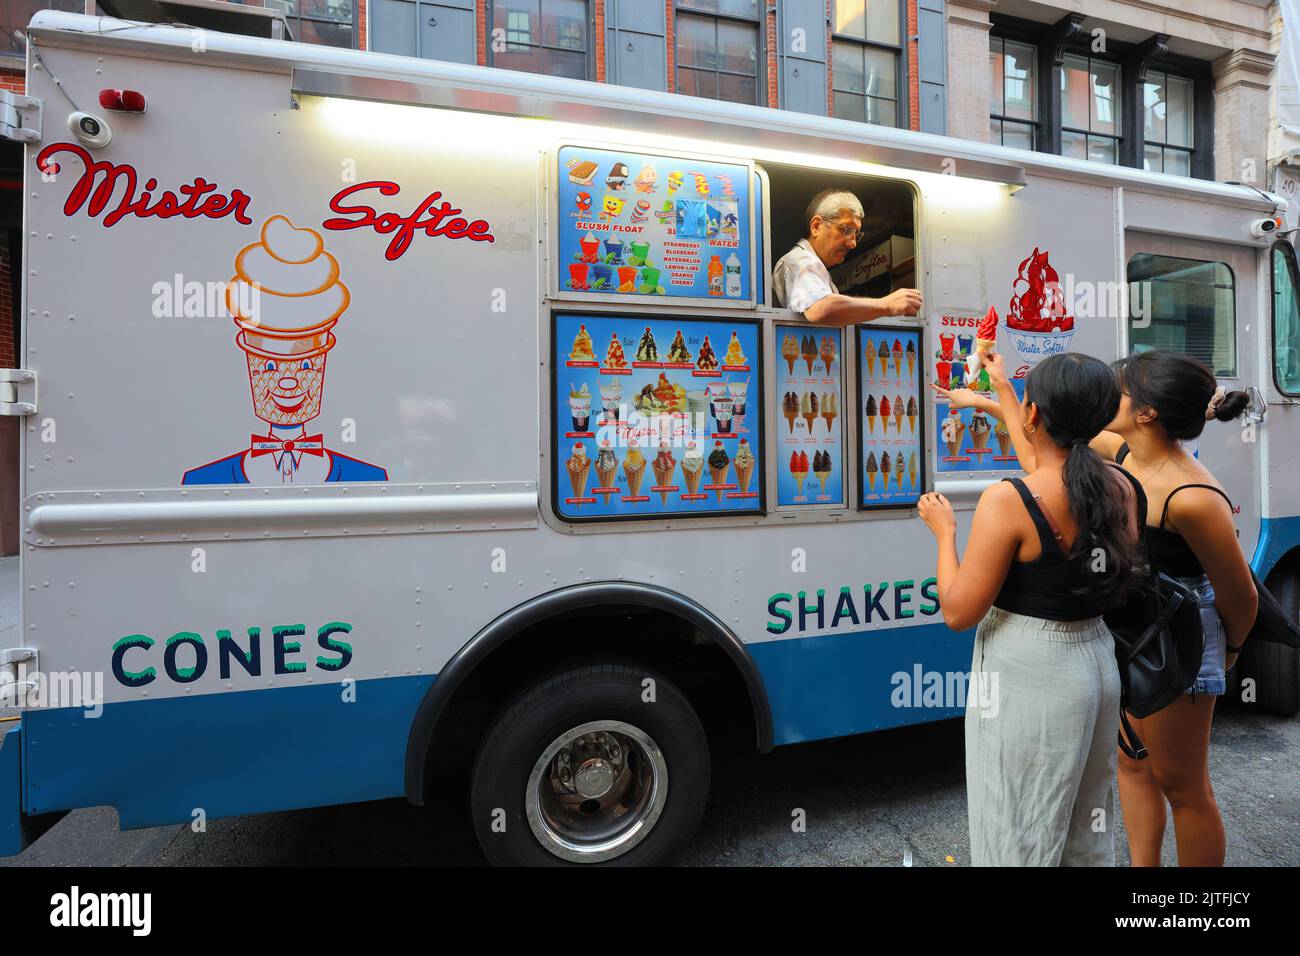 Clients américains asiatiques dans un camion de glace Mister Softee avec un opérateur/chauffeur américain asiatique, New York. Banque D'Images